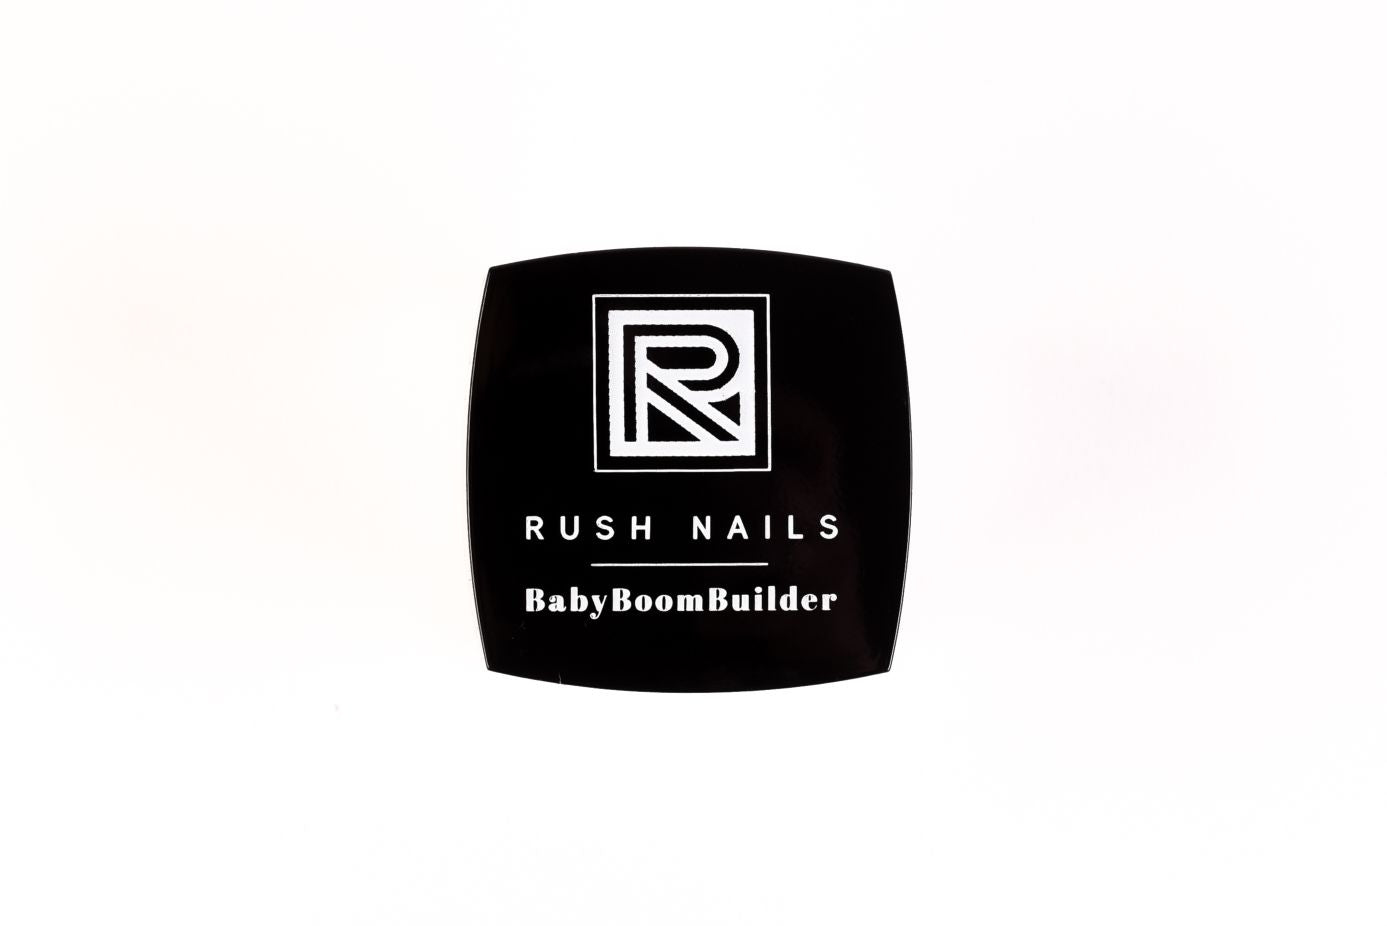 BabyBoomBuilder